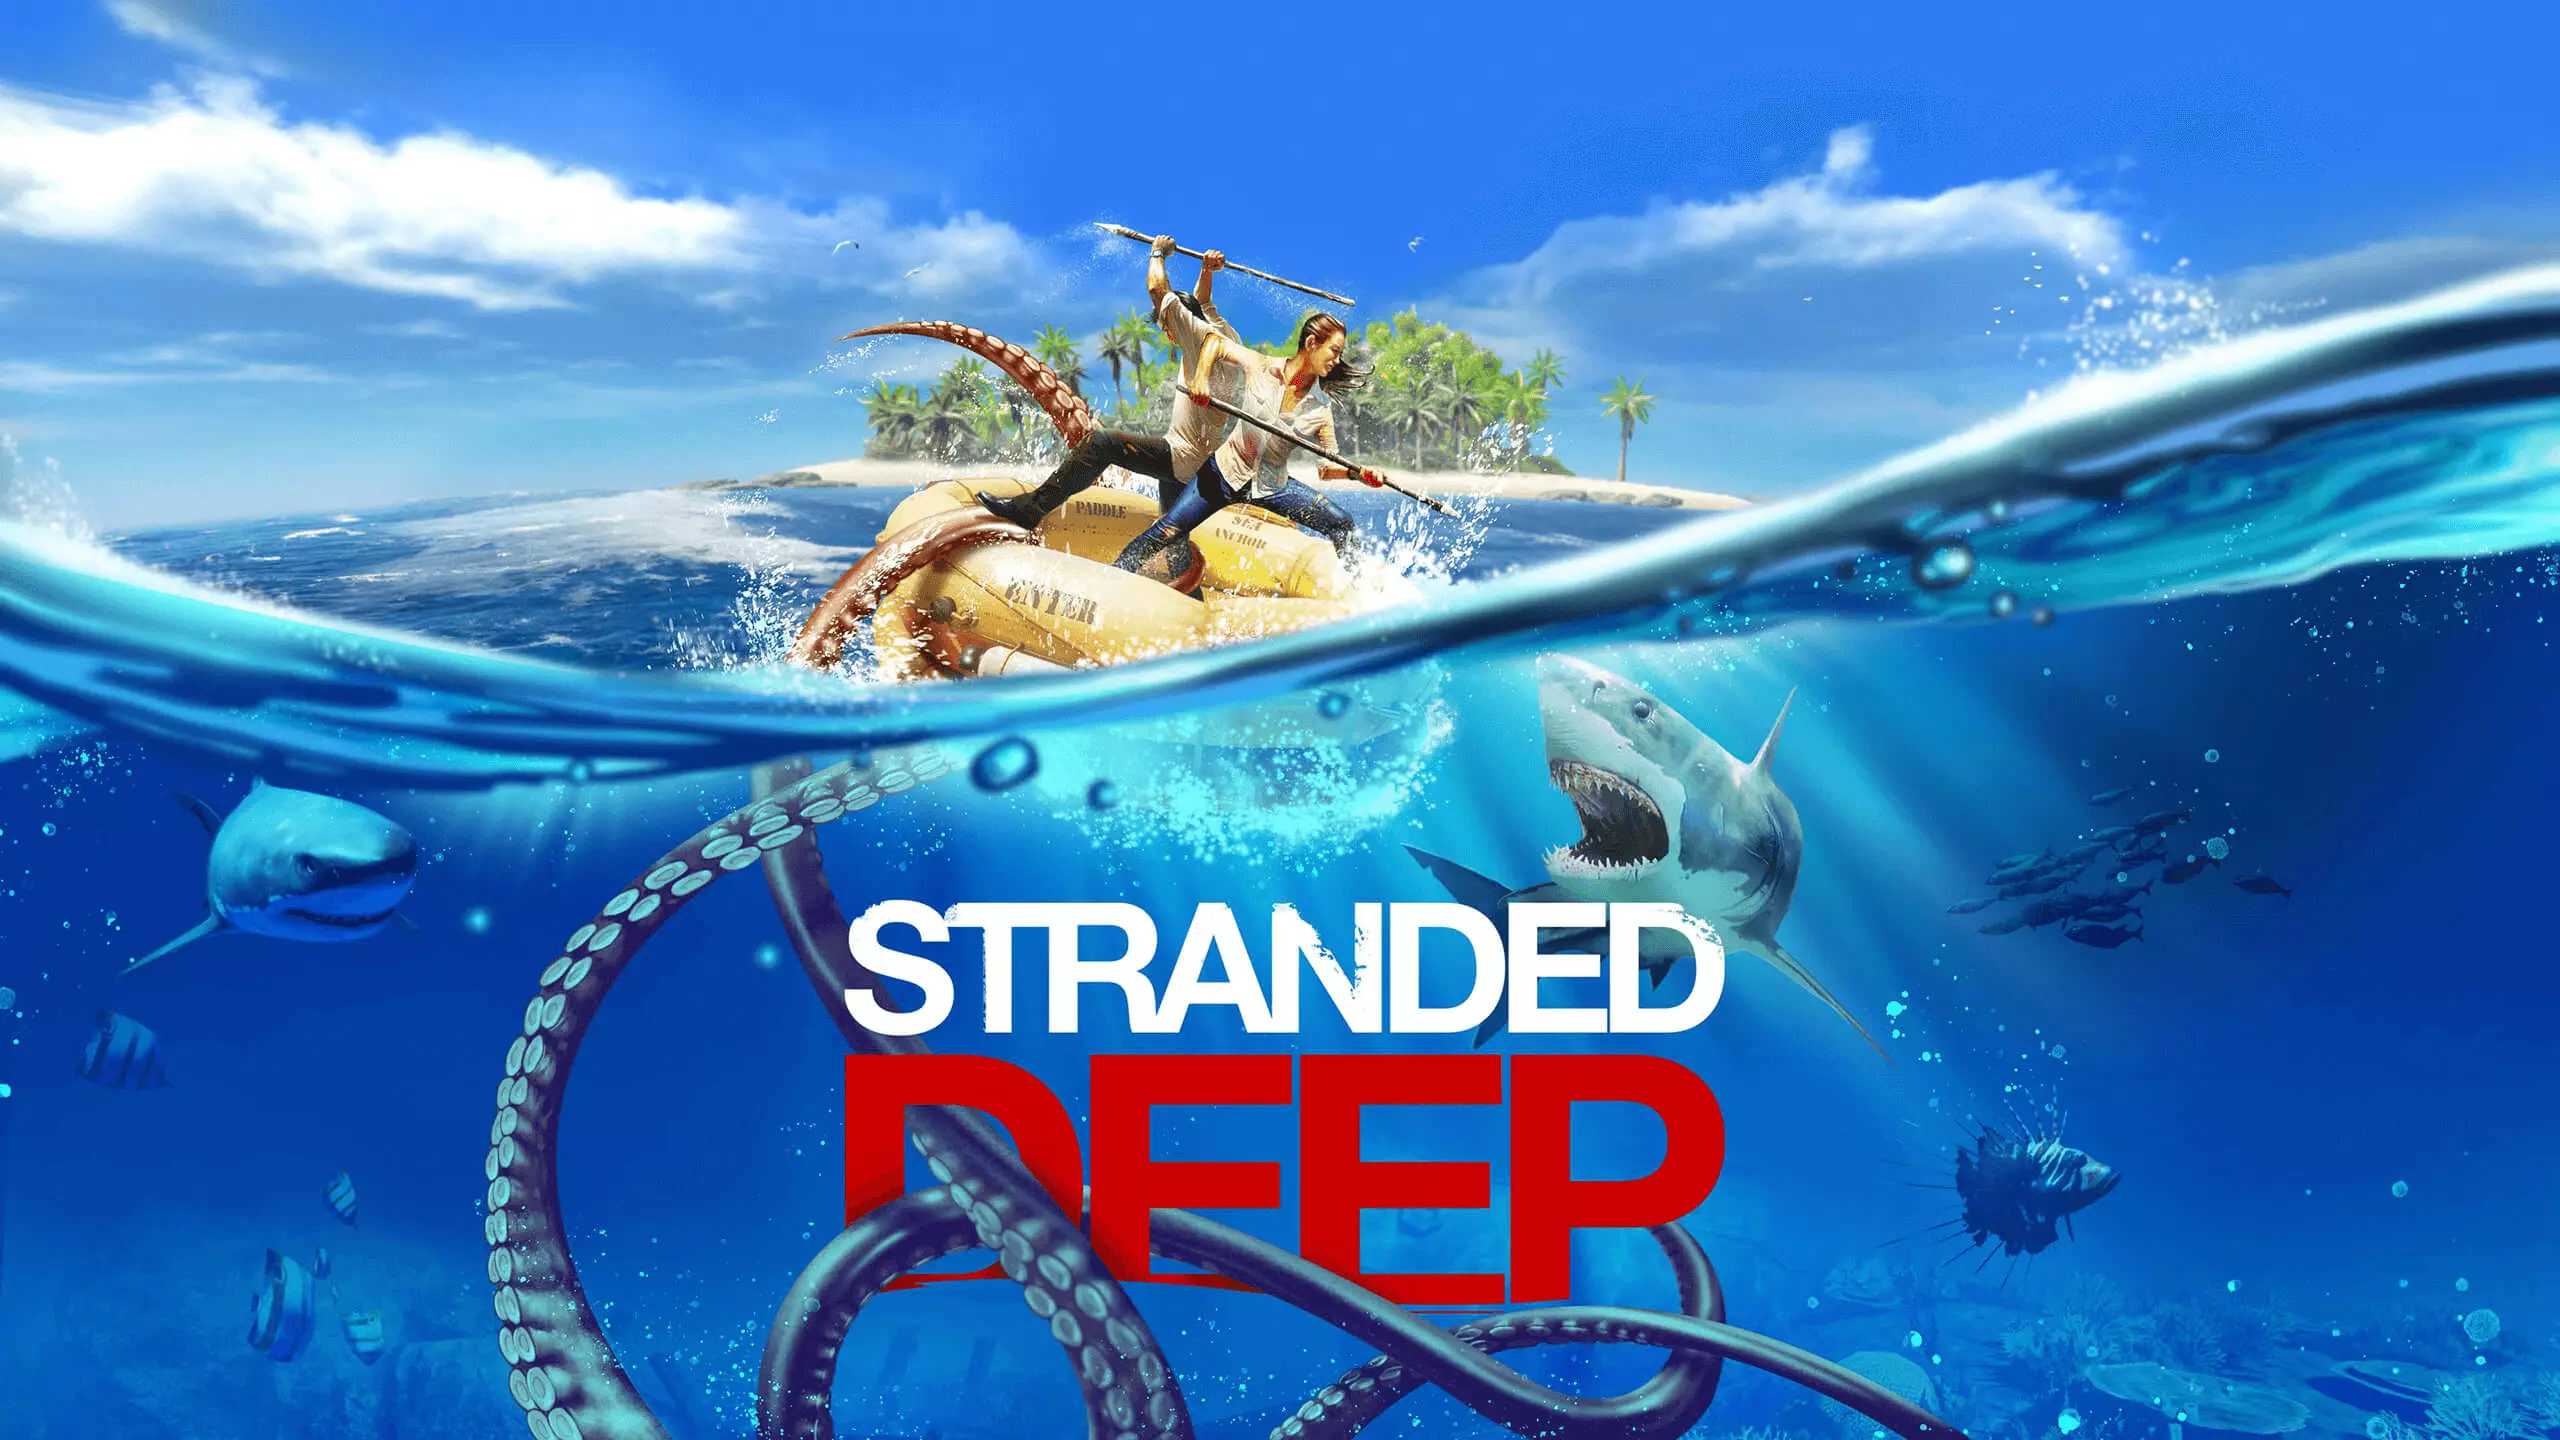 Stranded Deep - это игра на выживание в открытом мире от первого лица, разработанная и опубликованная австралийским разработчиком BEAM Team Games для Microsoft Windows и Mac OS X.